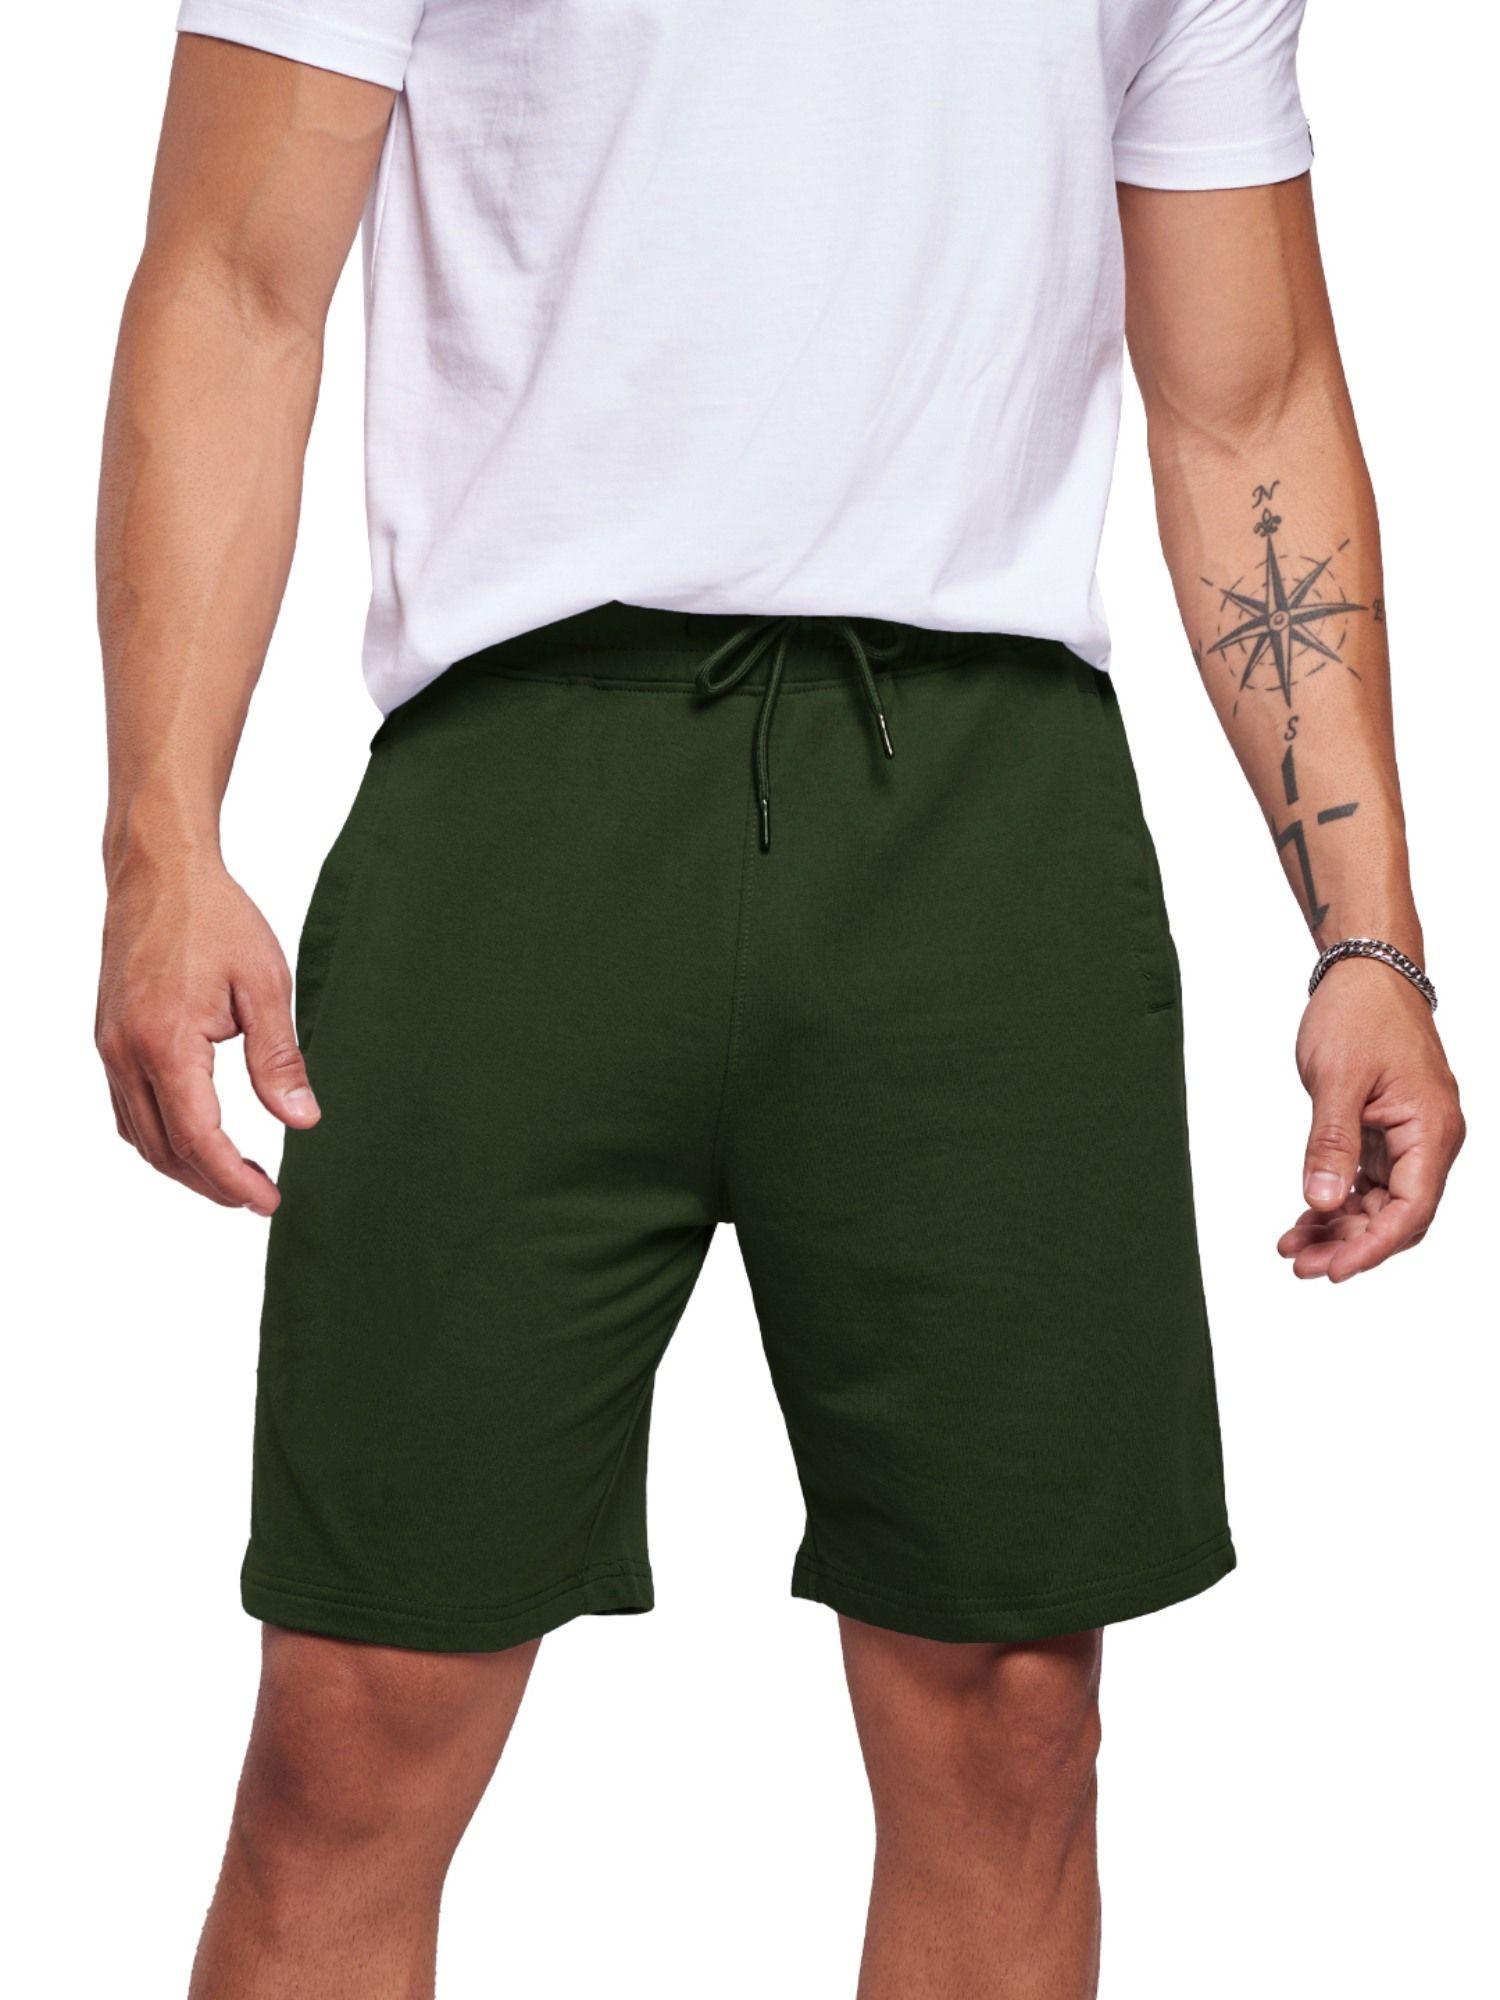 solids: dark olive lounge shorts for men